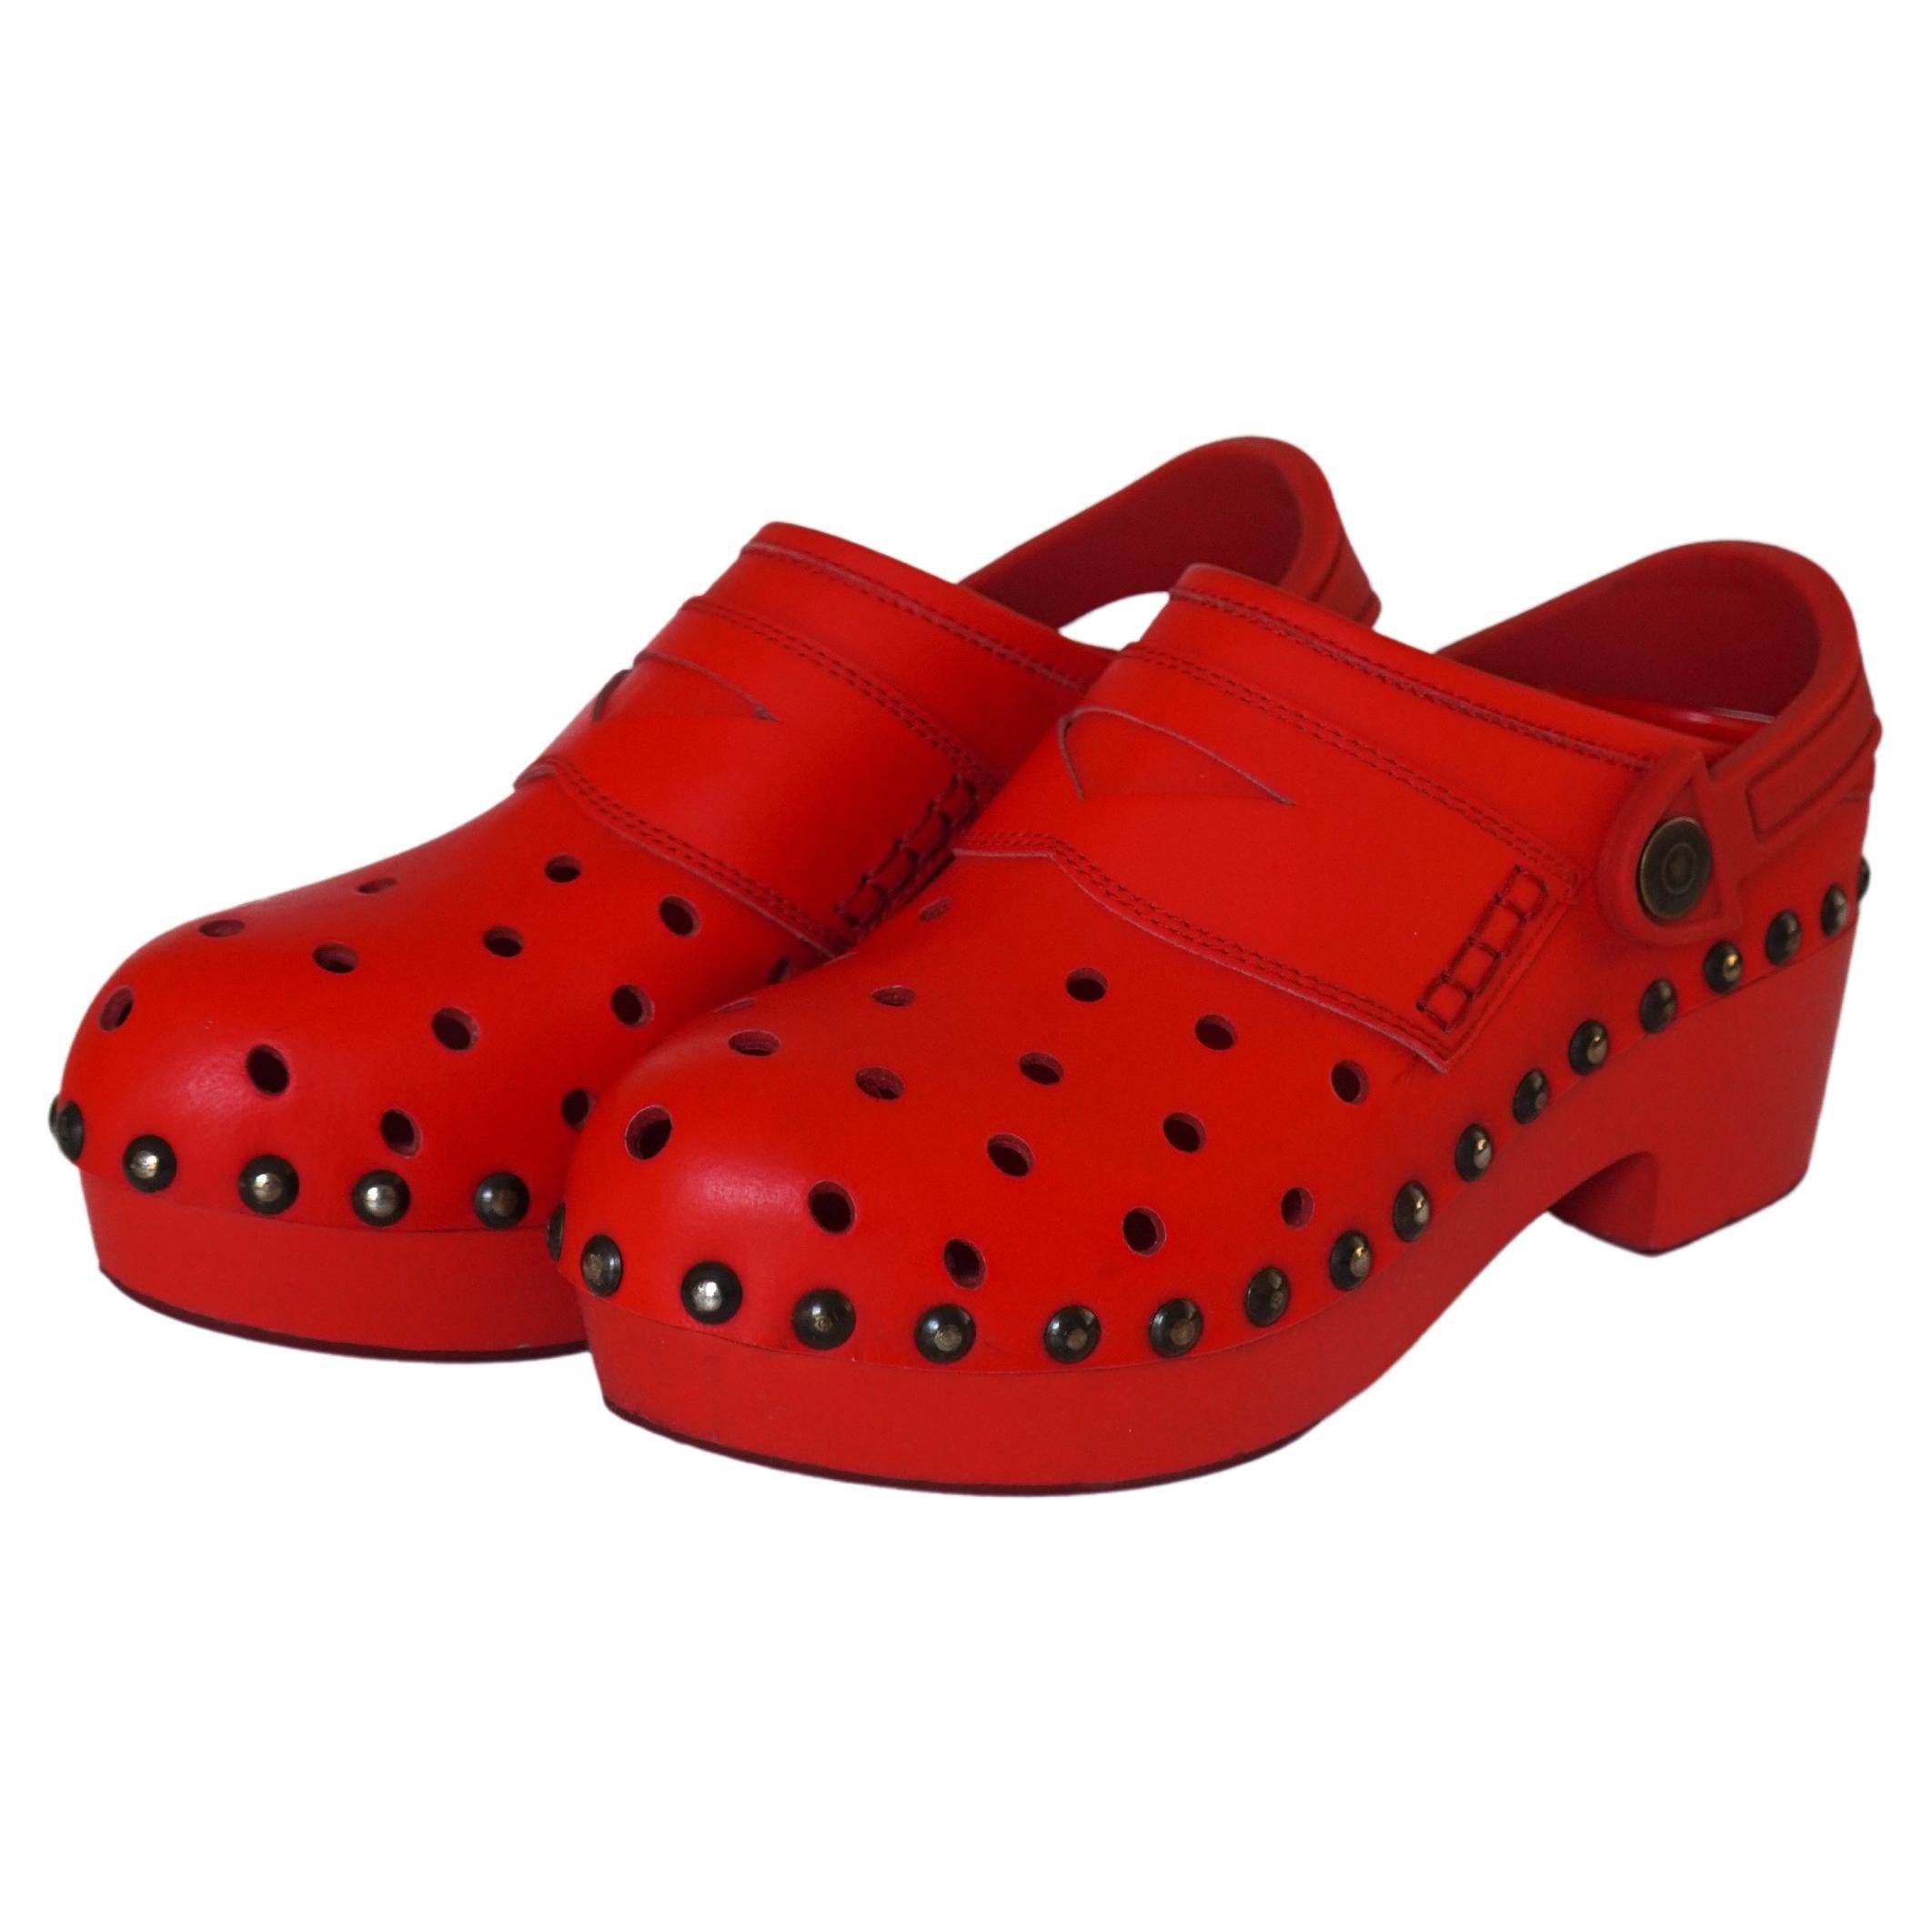 Maison Margiela Red Leather Platform Croc Clogs 39 For Sale